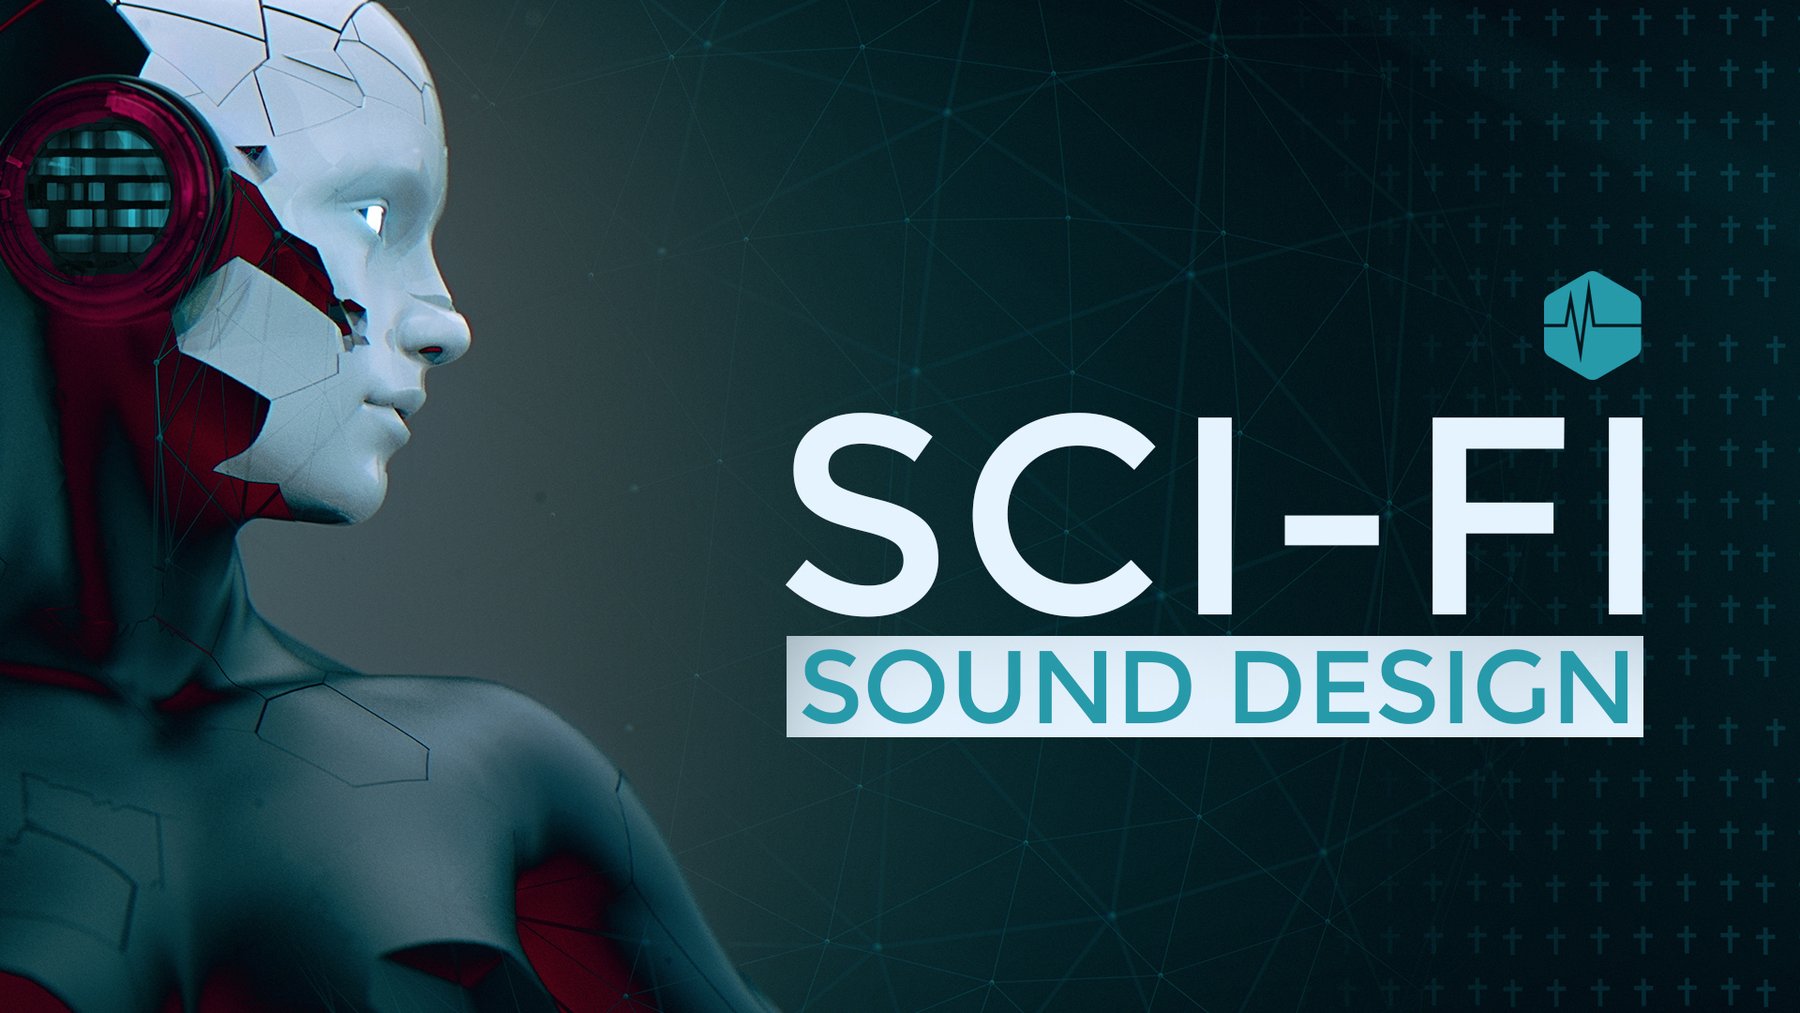 مجموعة واسعة من أصوات الخيال العلمي تتراوح من نغمات واجهة المستخدم والأصوات الآلية إلى تمرير دوبلر والآليات المعقدة Triune Digital - Sci-Fi Sound Design